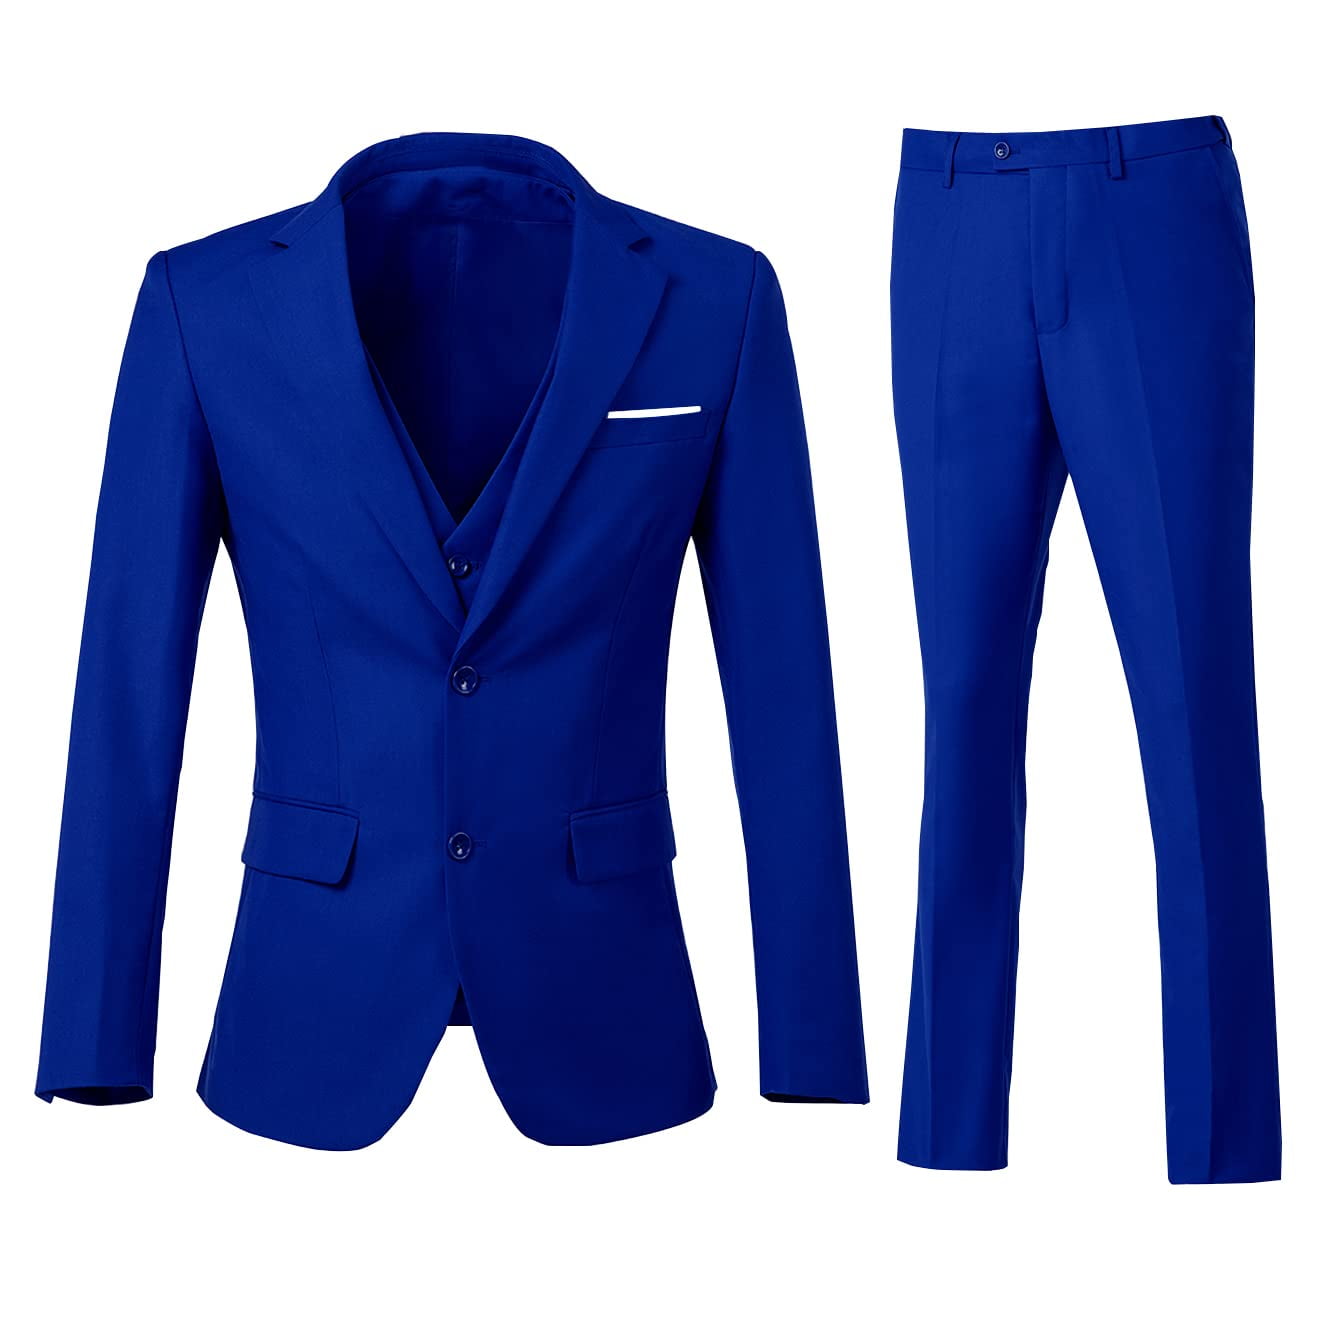 Men Suits Slim Fit 3 Piece Royal Blue Business Wedding Suits